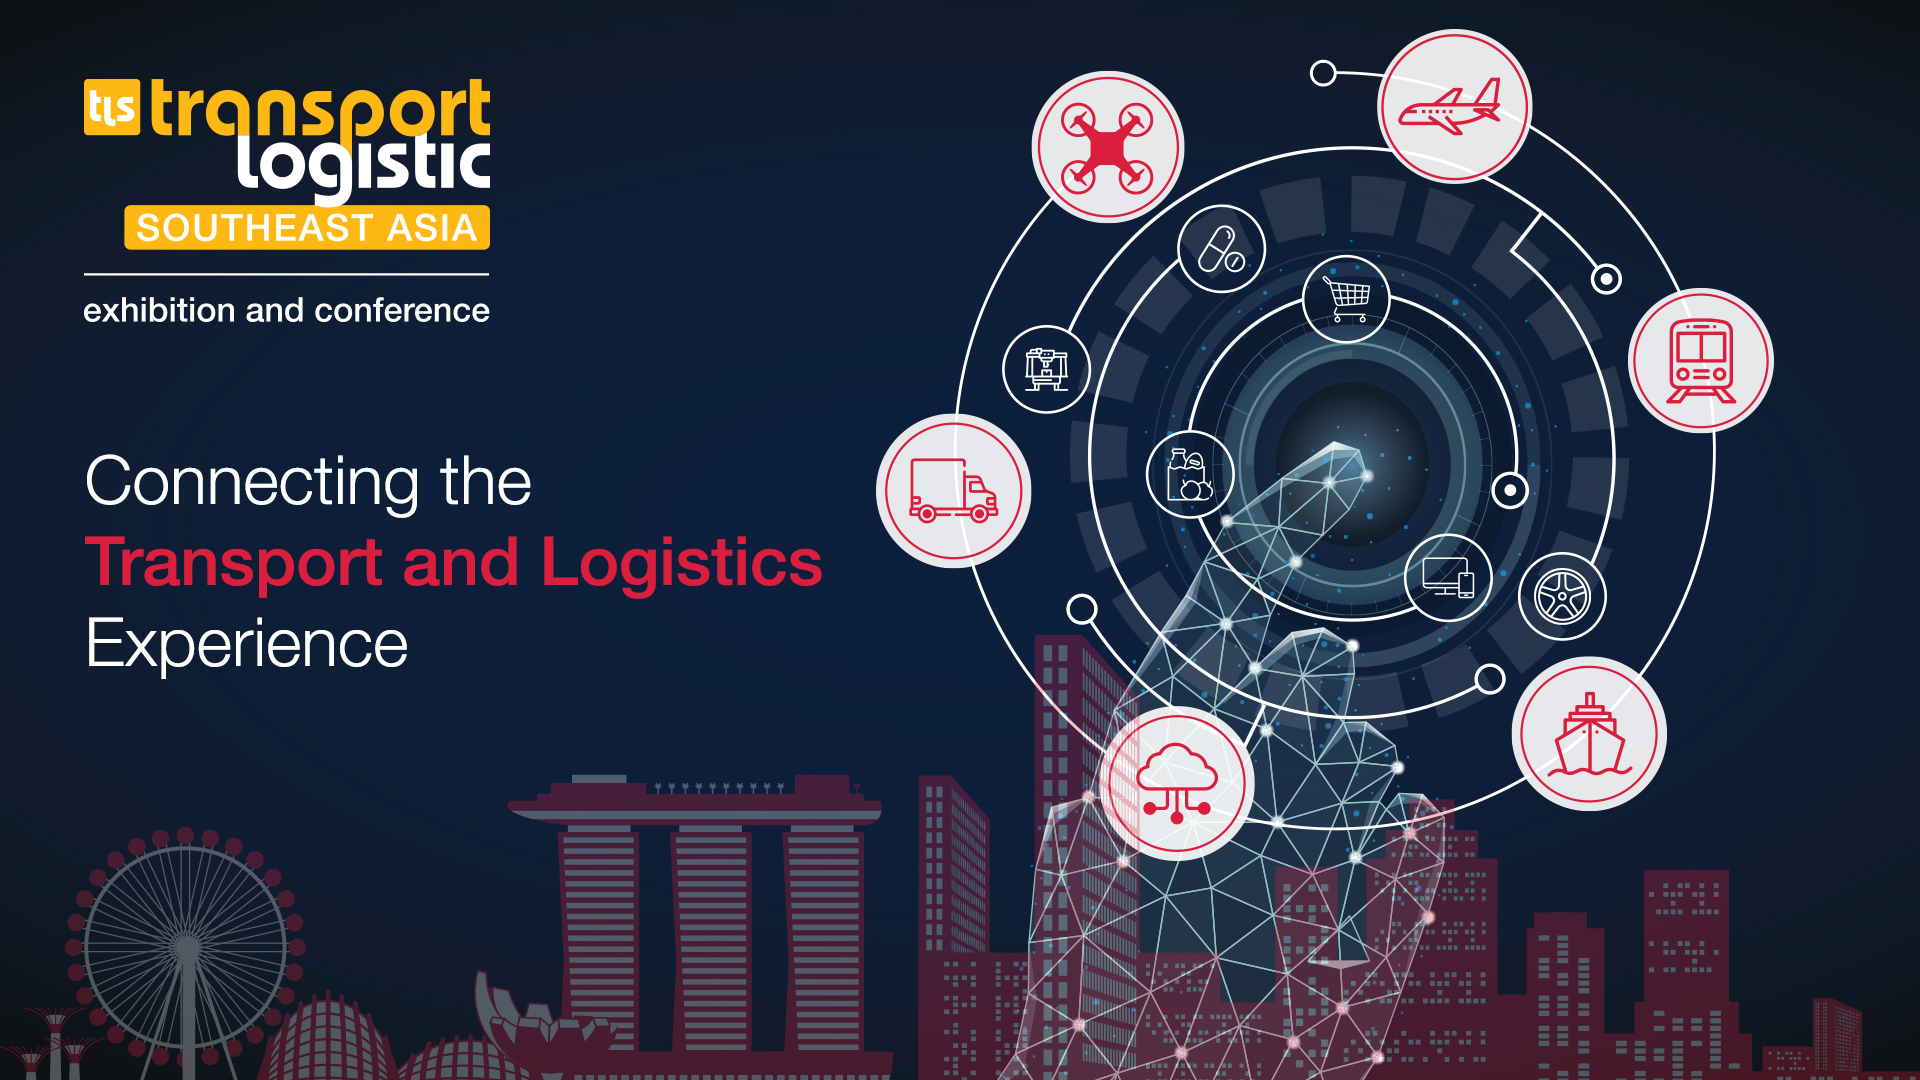 transport logistics and air cargo Southeast Asia 2023, Singapore, South East, Singapore